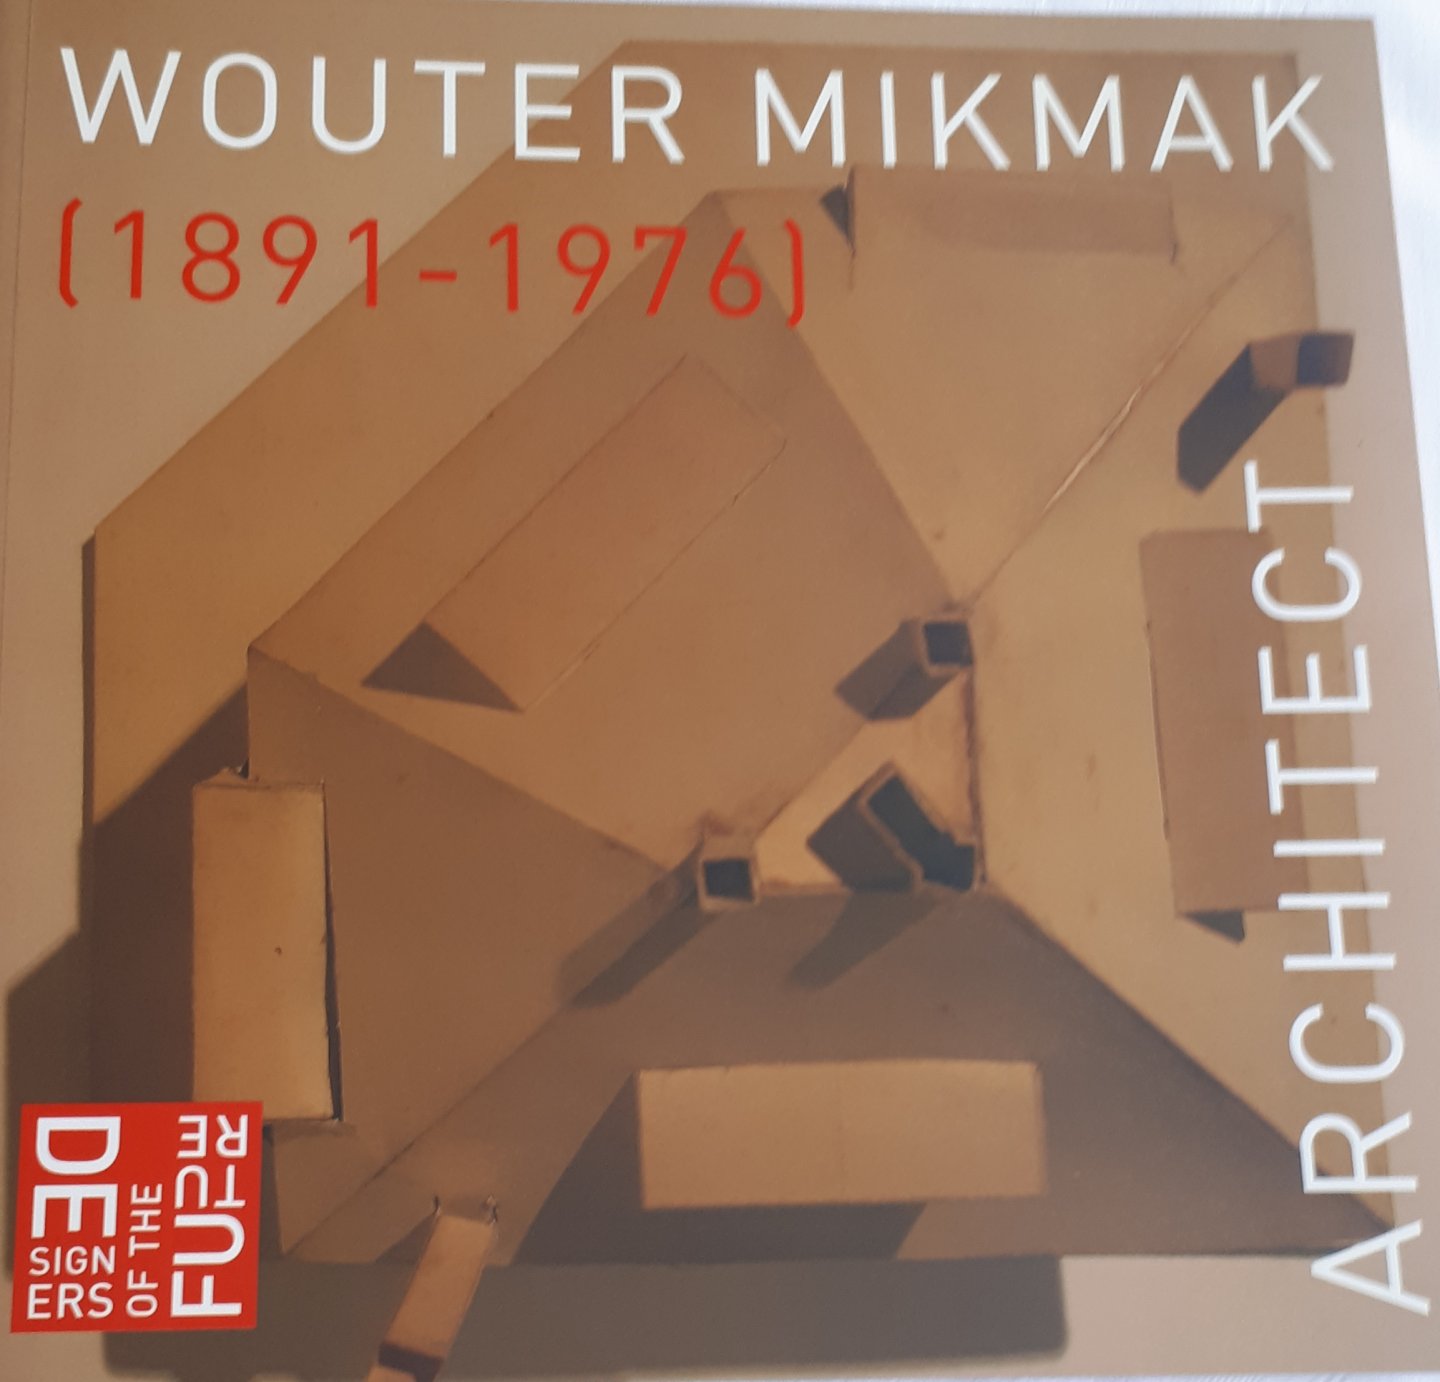 BRUIJN, Anne Sophie de - Wouter Mikmak, architect (1891-1976)